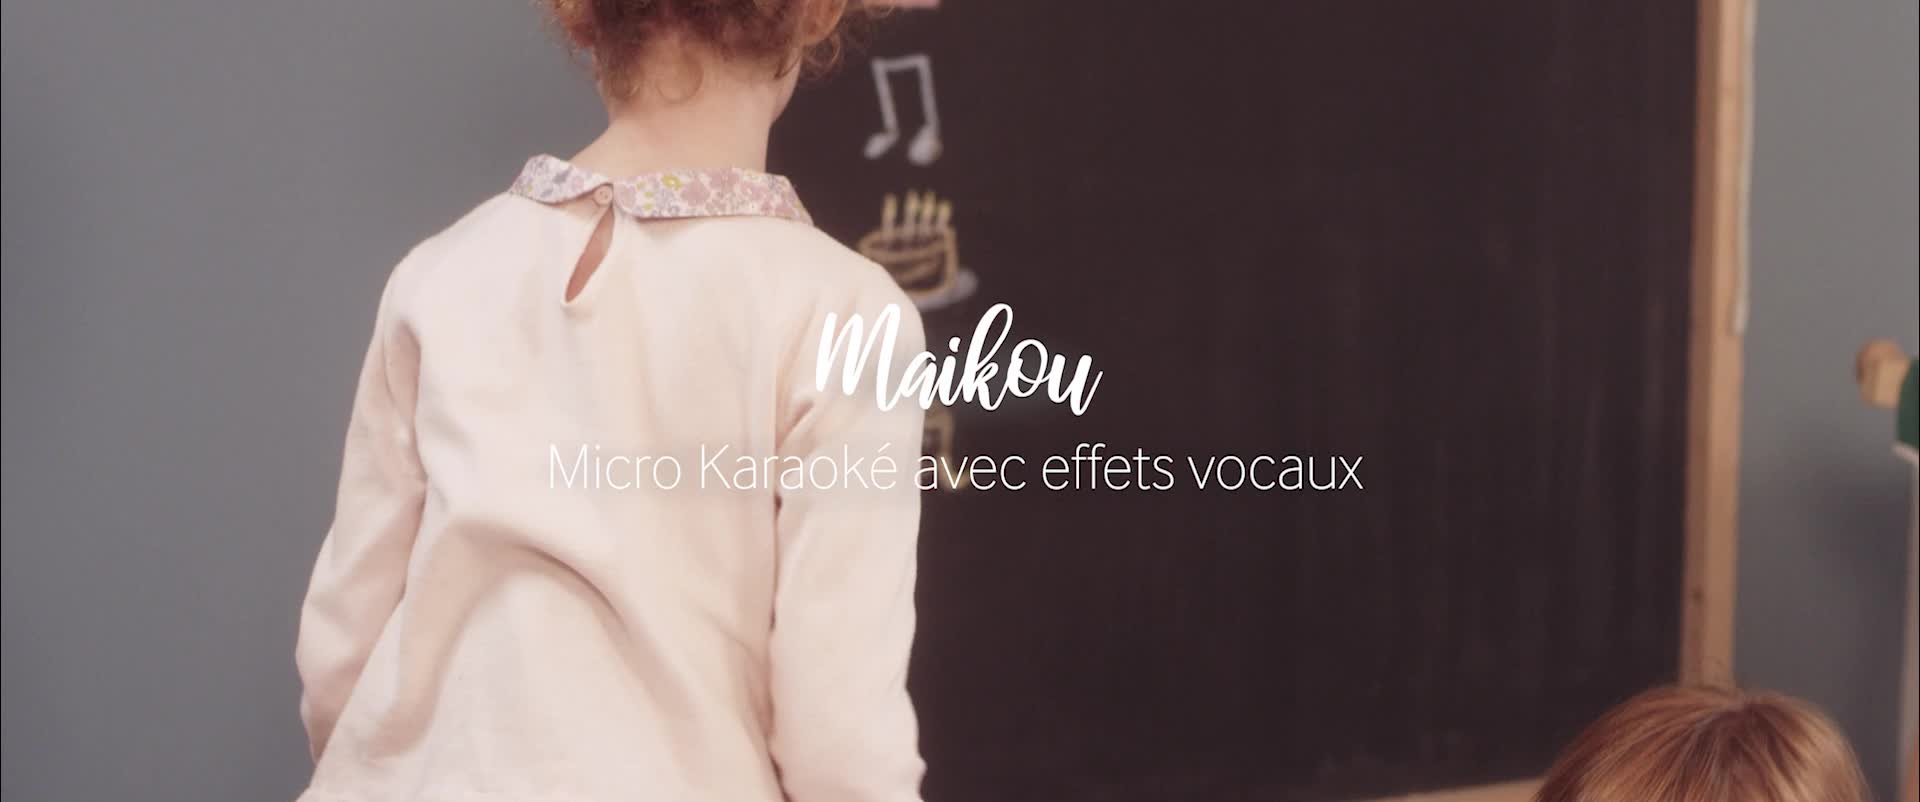 Micro Karaoké enfant avec effets vocaux - BIGBEN - HPMICVFPKBB 